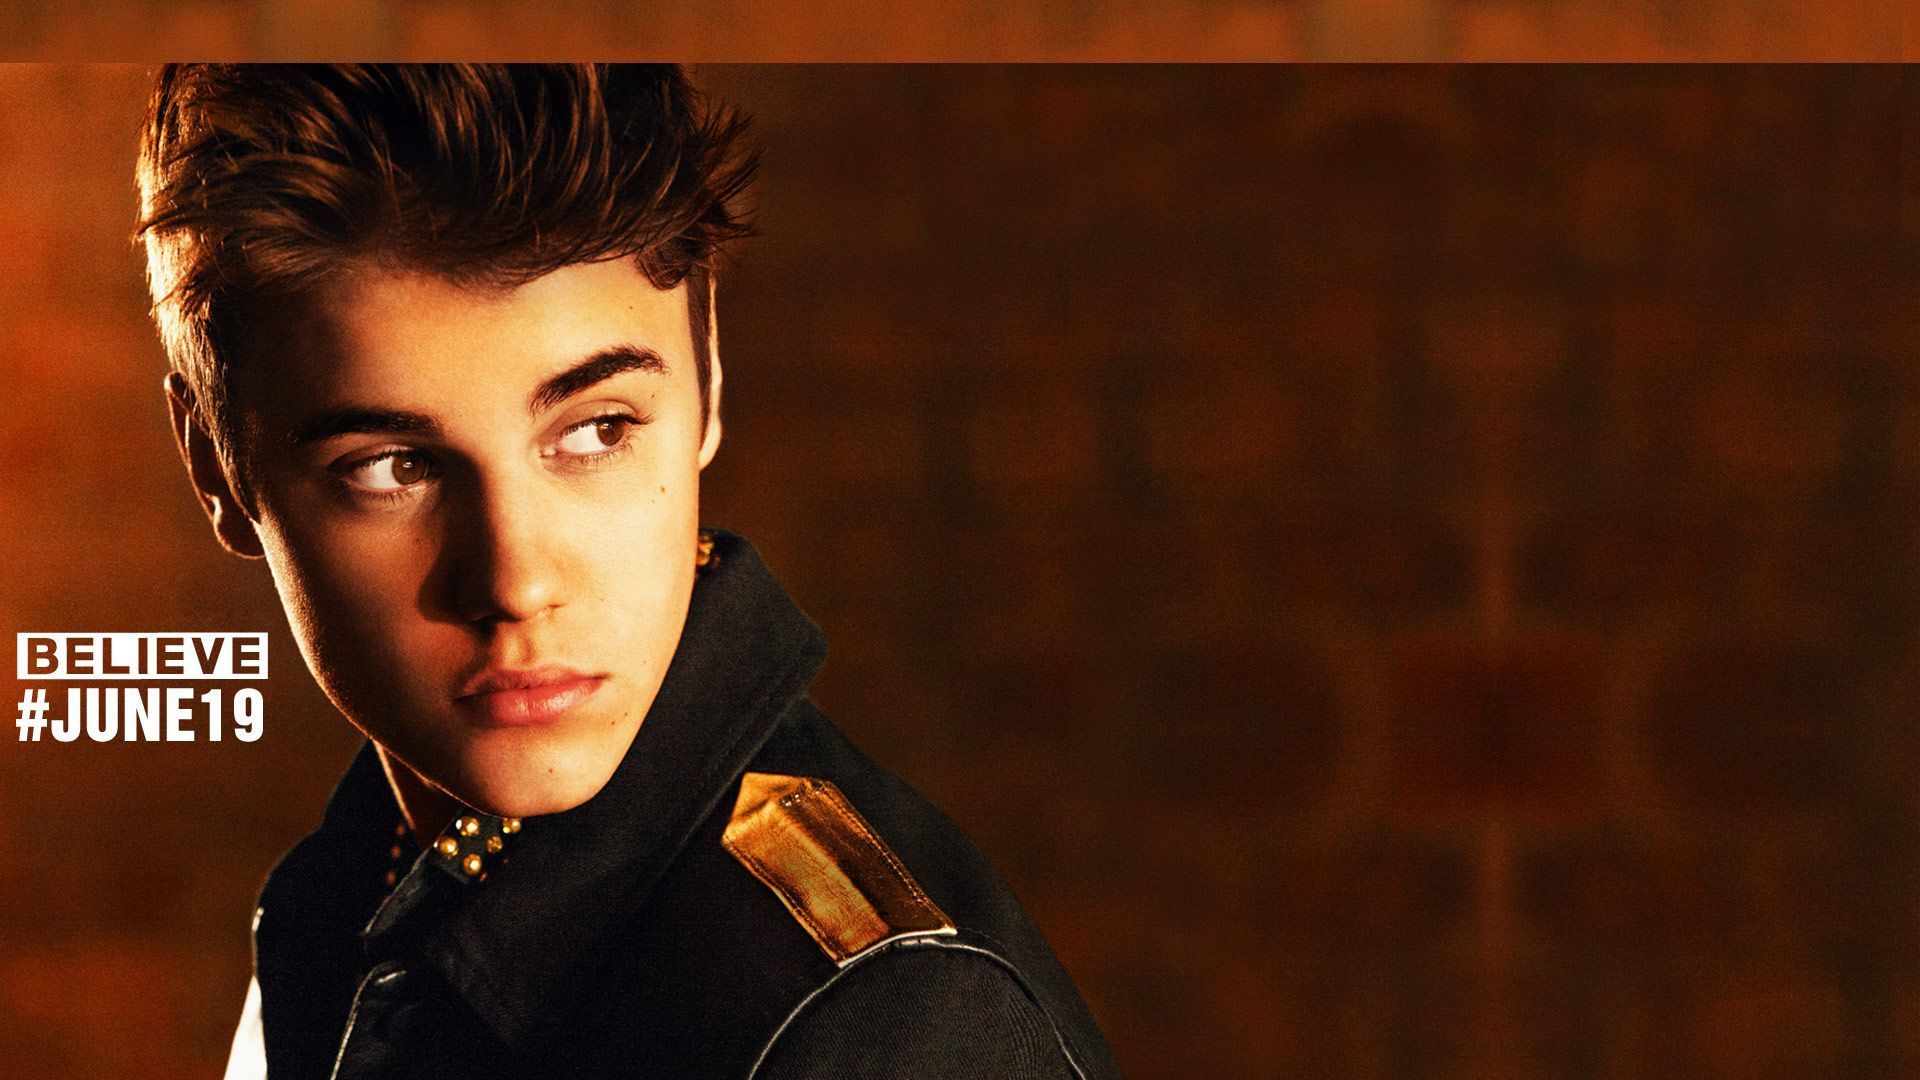 JB - Justin Bieber Wallpaper 31350275 - Fanpop